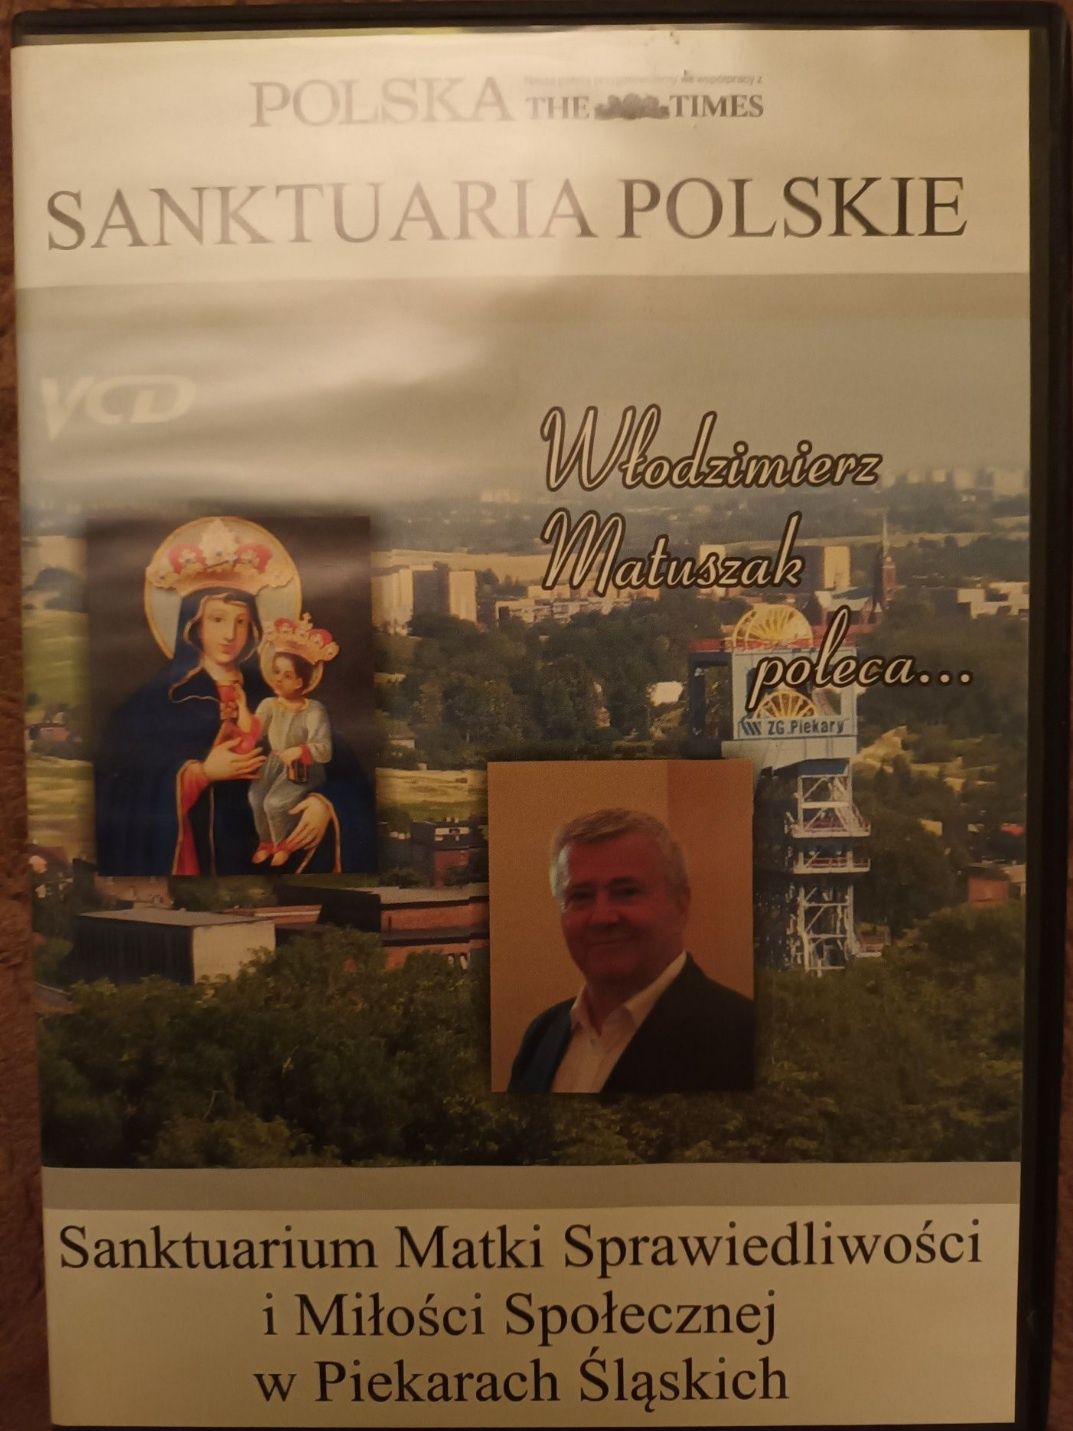 Sanktuaria polskie vcd 4szt